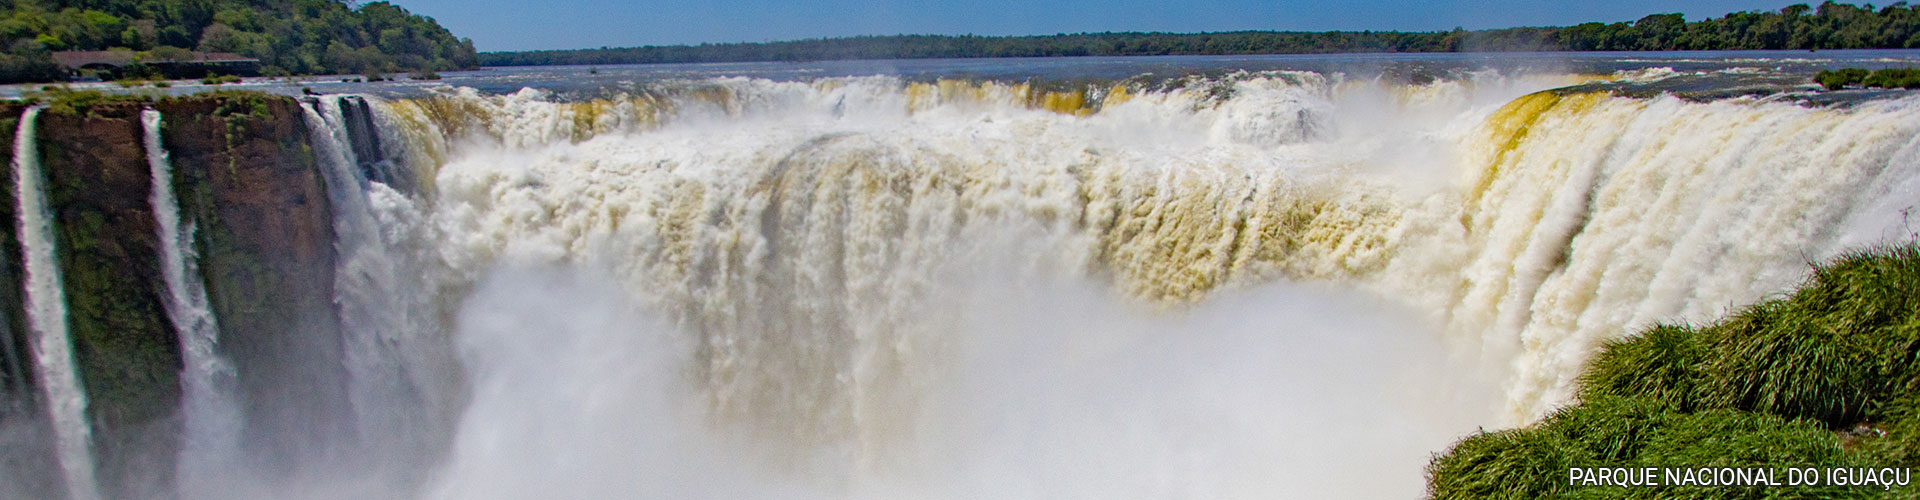 Cataratas do Iguaçu (Argentina)